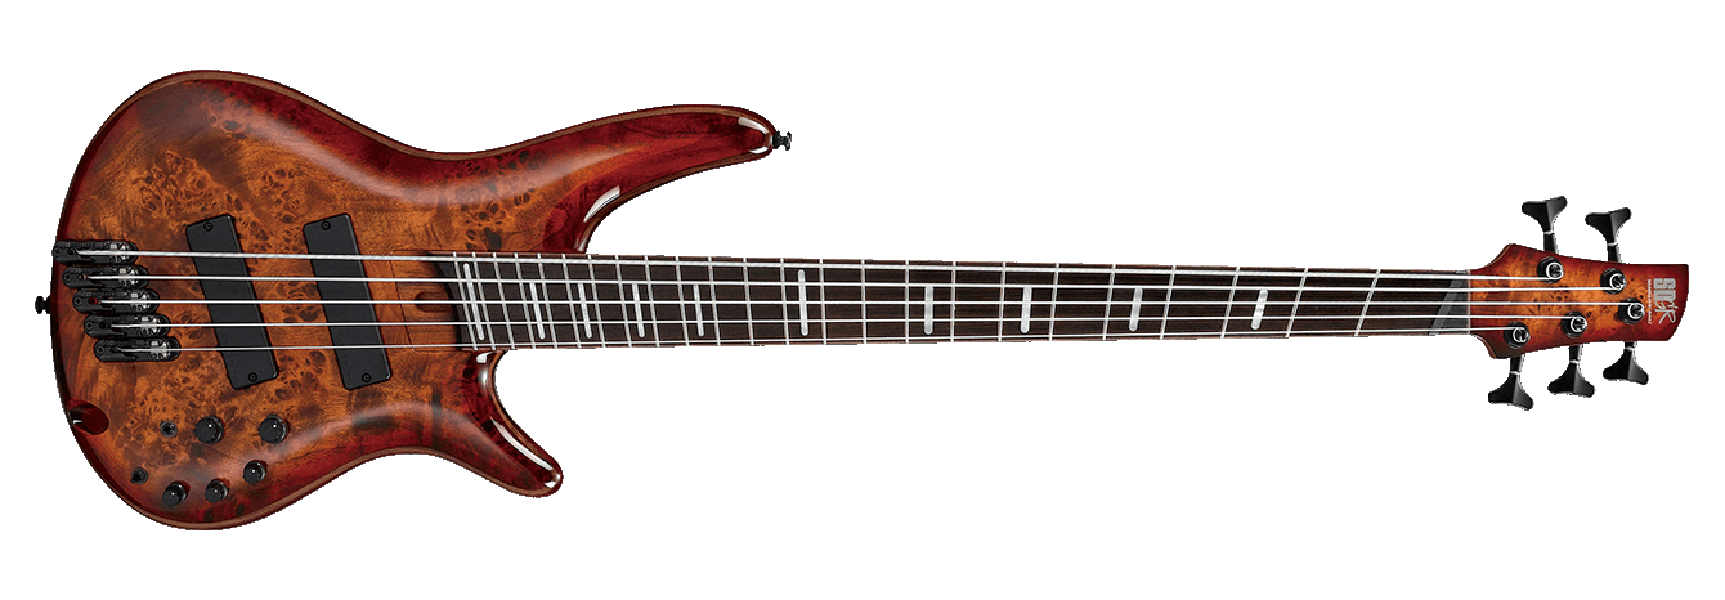 Ibanez Srms805 Btt Bass Workshop Multiscale Active - Brown Topaz Burst - Solidbody E-bass - Variation 1